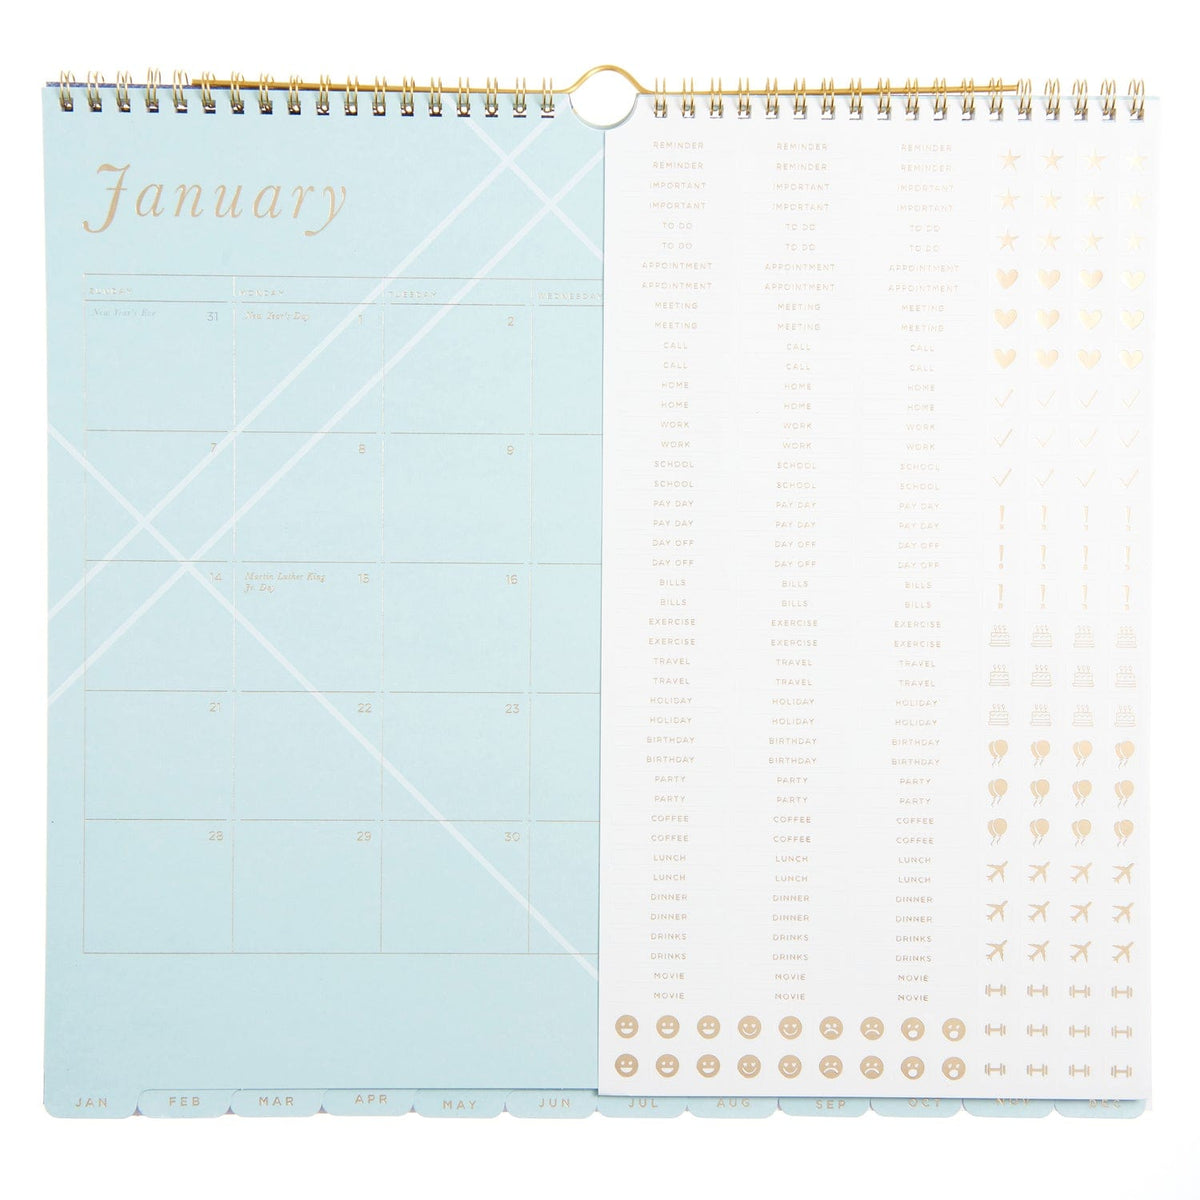 Blue Blocks - Wall Calendar 61730 russell+hazel Calendar